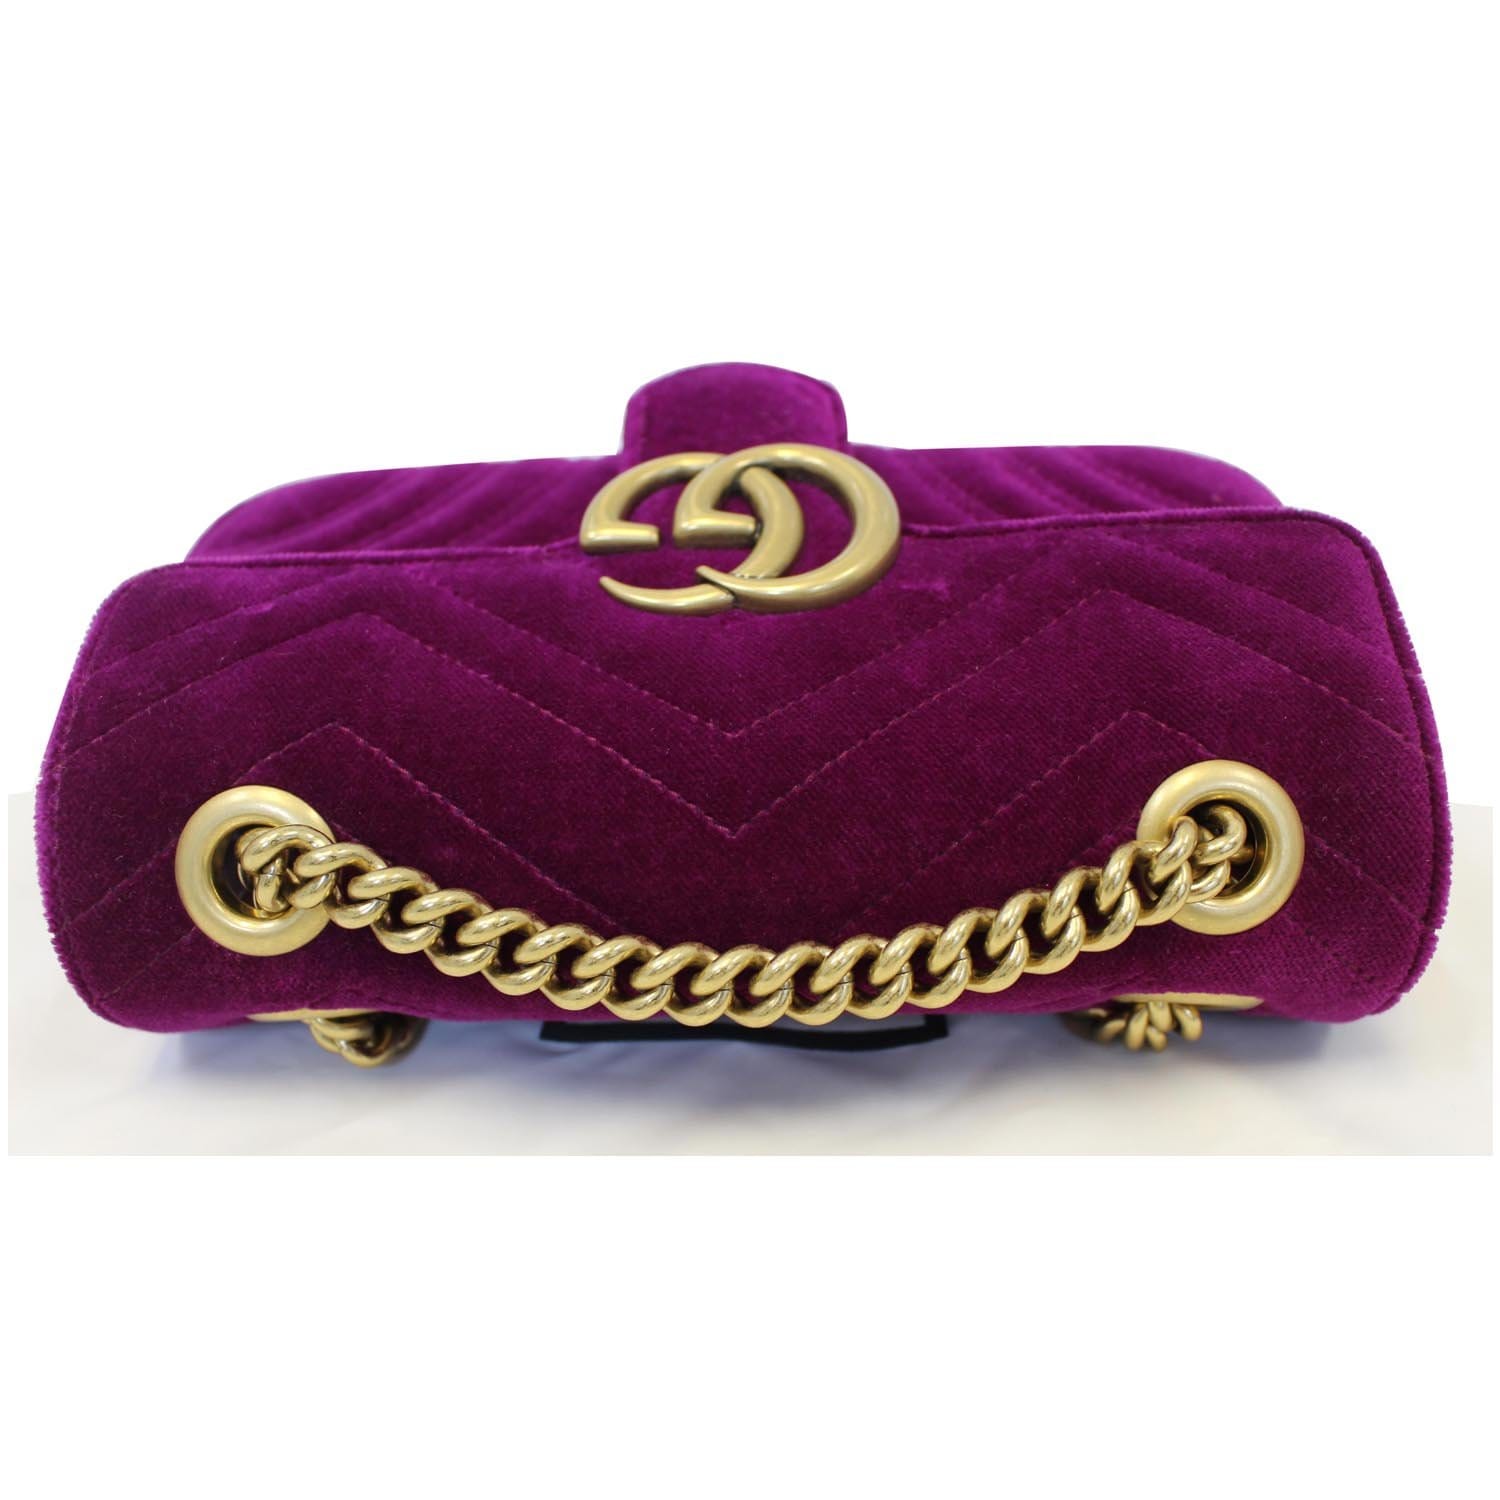 Gg marmont flap velvet crossbody bag Gucci Purple in Velvet - 21650905